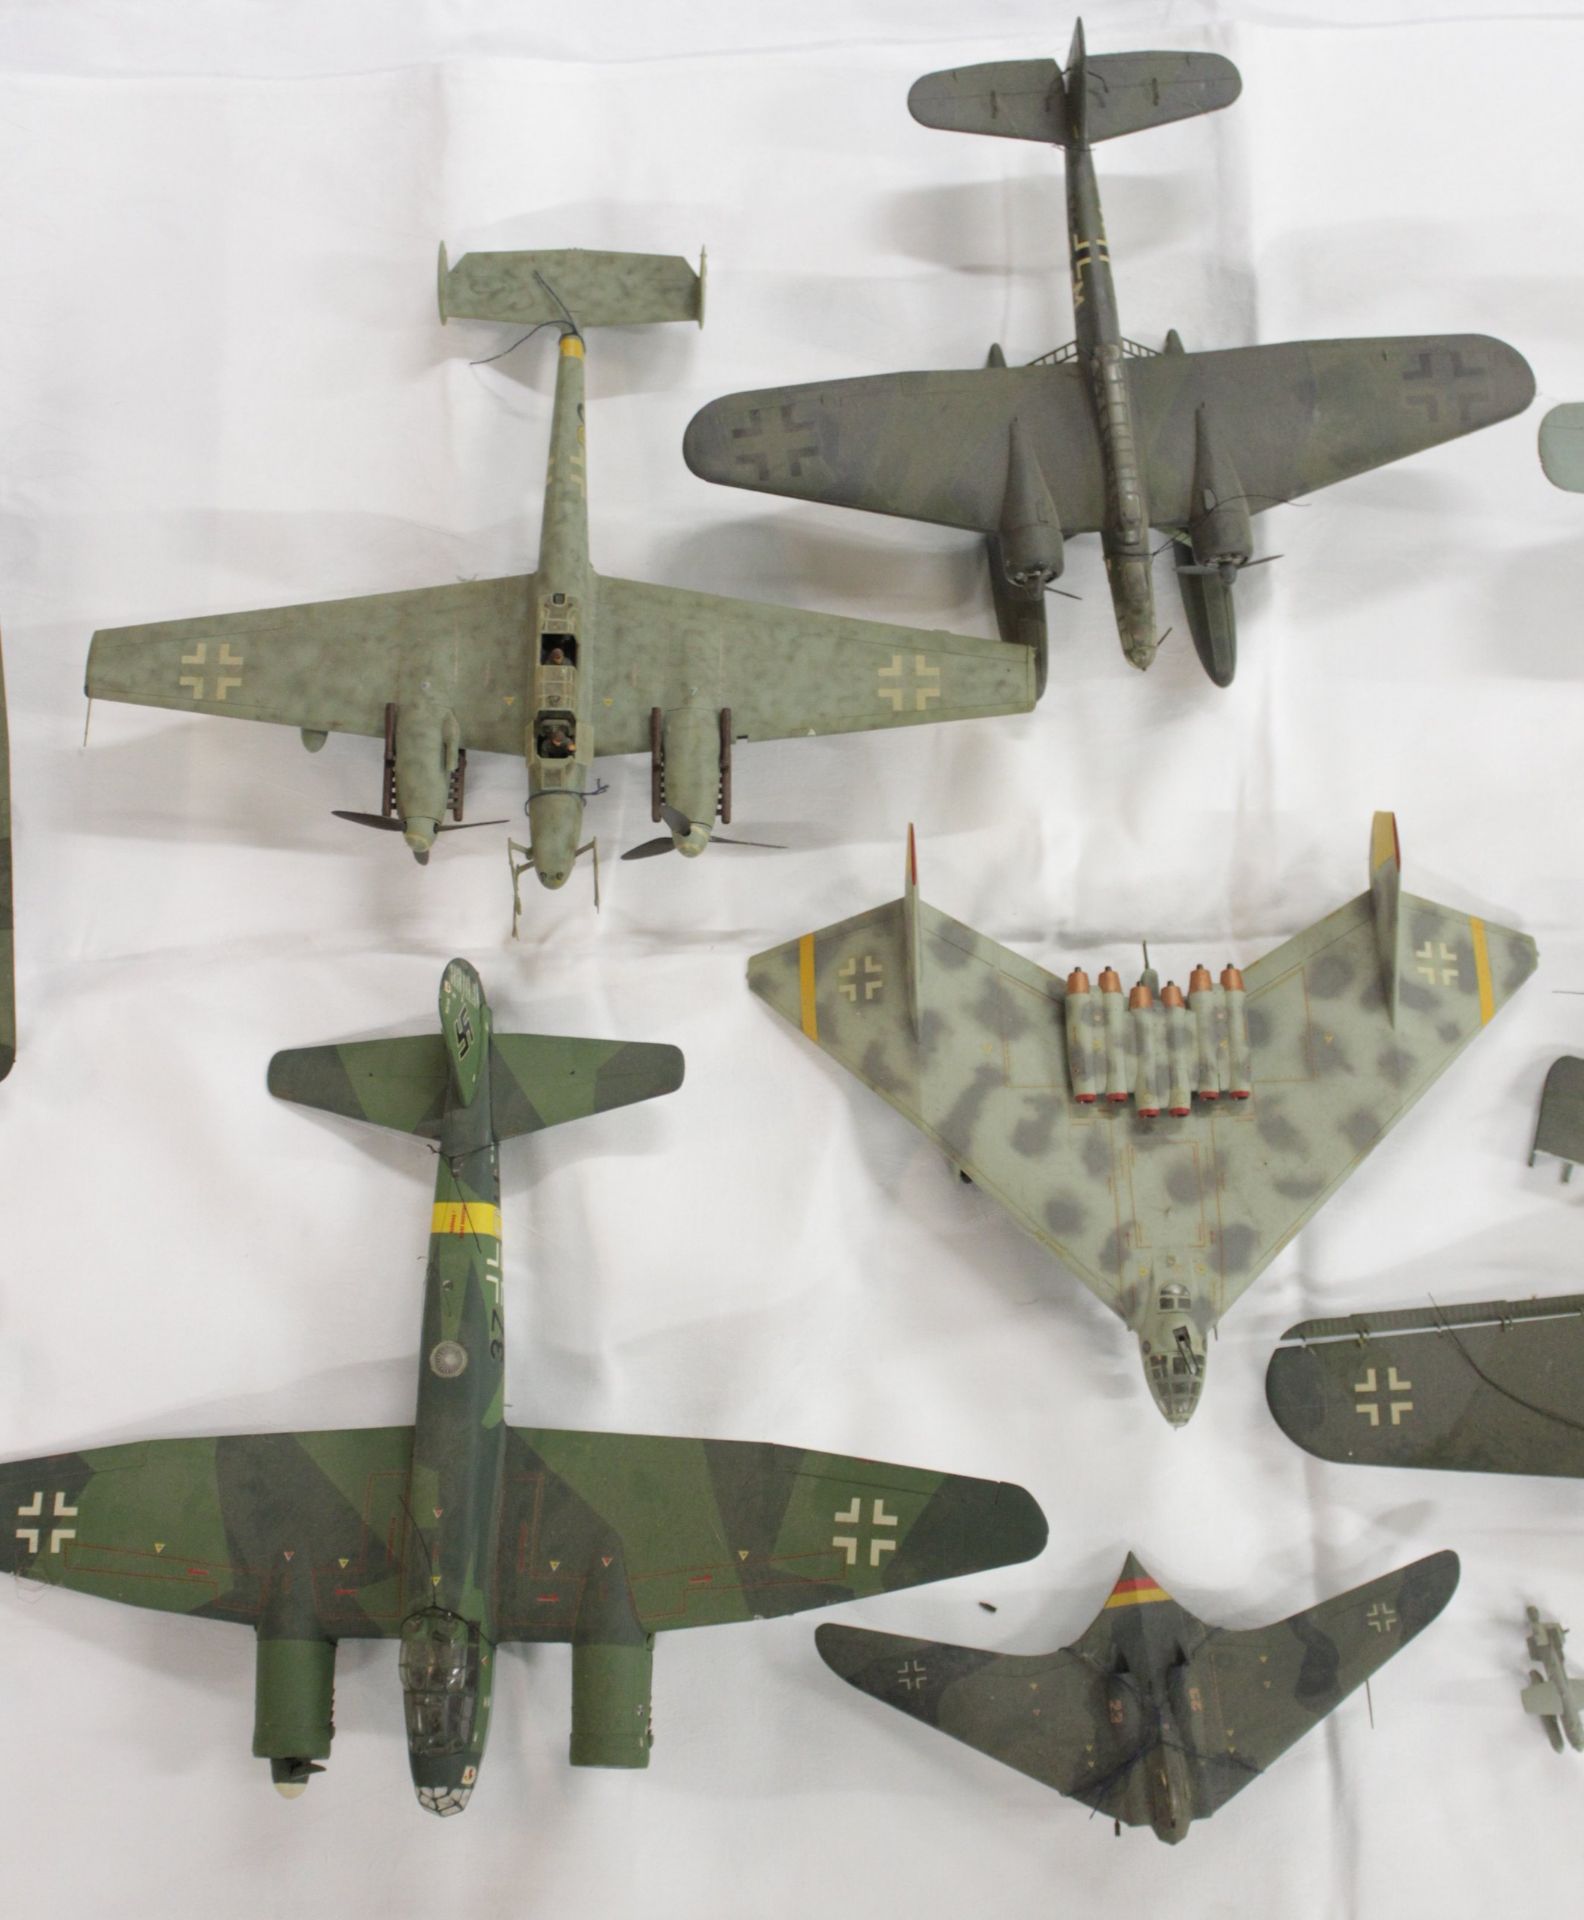 Konvolut div. Modell-Flugzeuge, meist mit Beschädigung (Teile lose, abgebrochen etc.), Vollständigk - Image 2 of 15